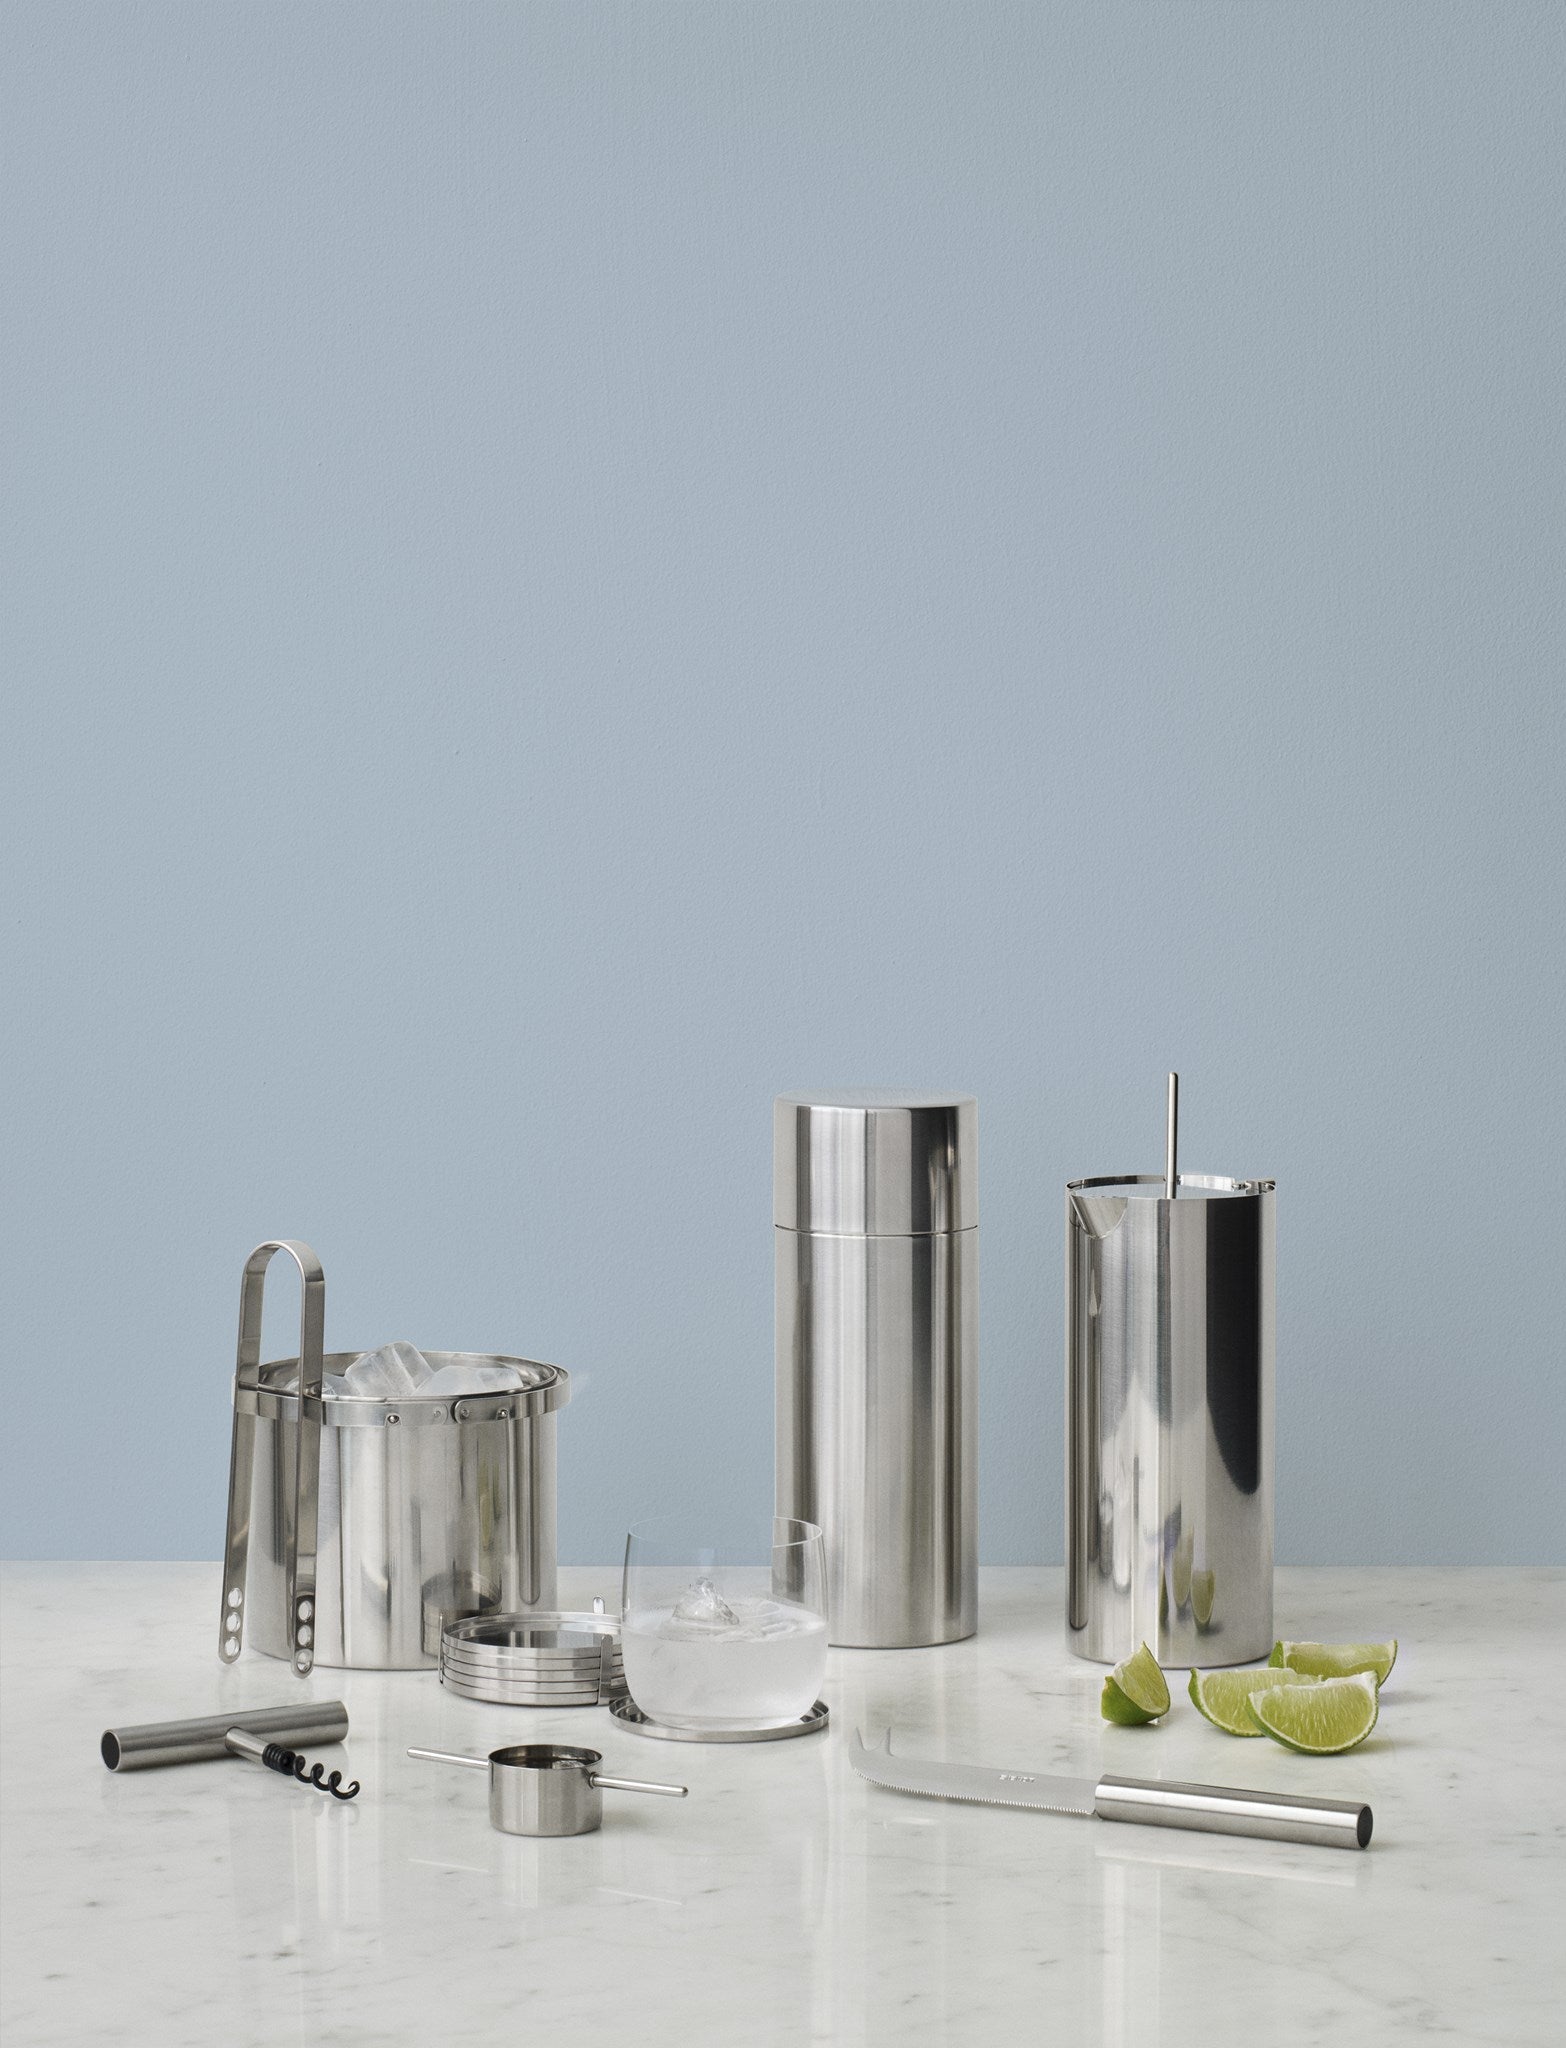 Stelton Arne Jacobsen Pinces à glace